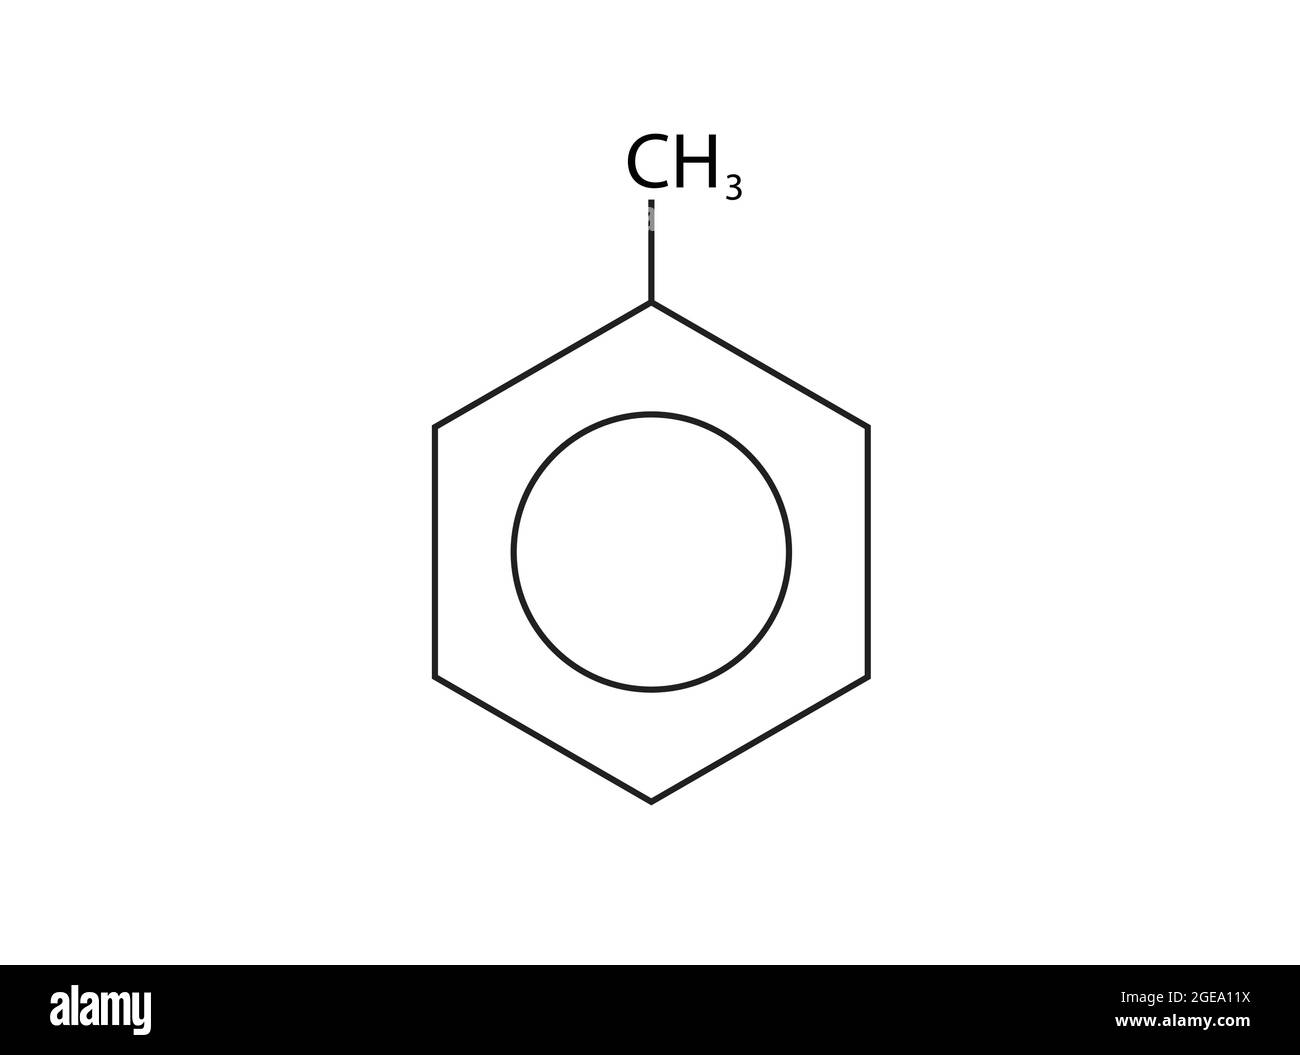 Chemische Struktur von Methylbenzol, Anatomie von Methylbenzol, Molekulare Struktur von Methylbenzol, Chemische Formel von Methylbenzol Stock Vektor